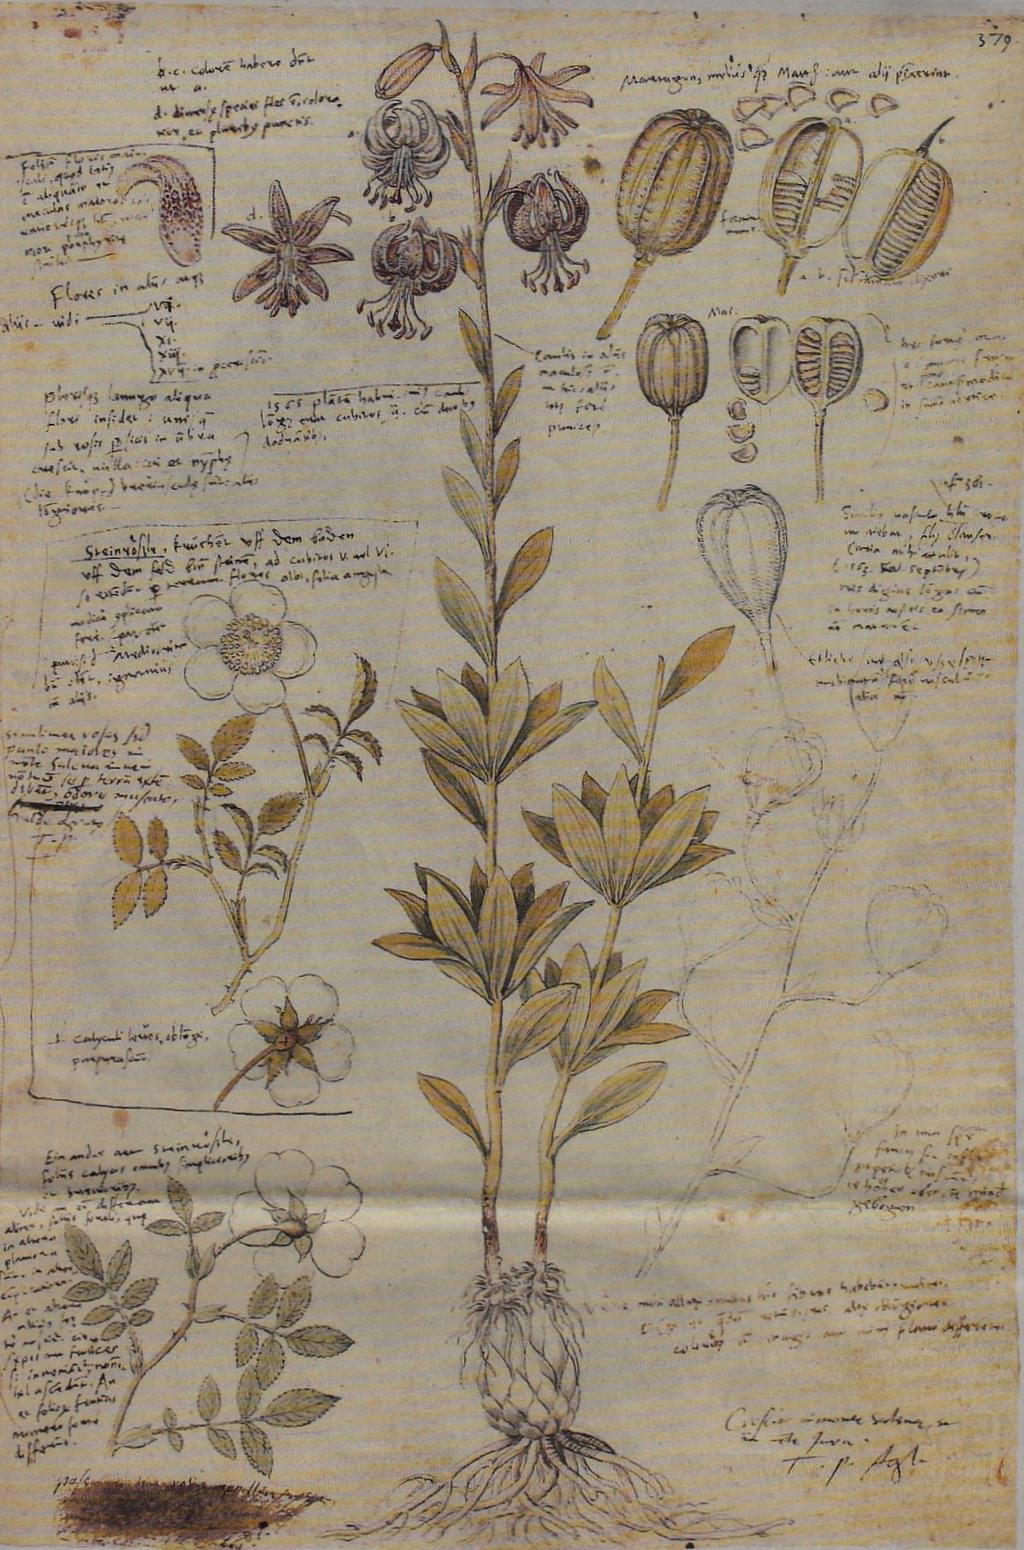 -3- Gessners eigene Illustrationen in der «Historia plantarum»